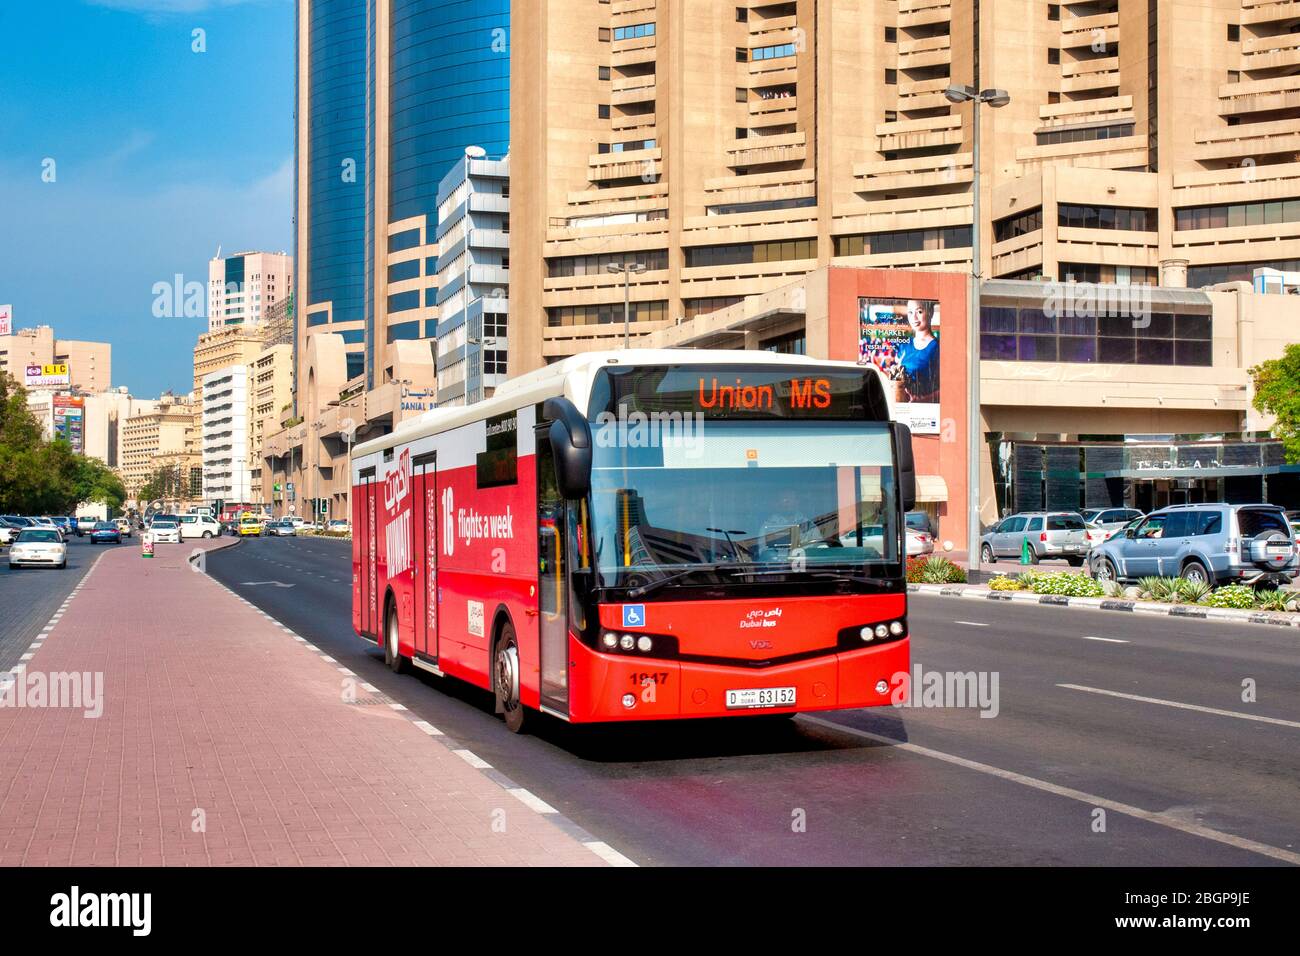 Public transport bus in Dubai, UAE Stock Photo